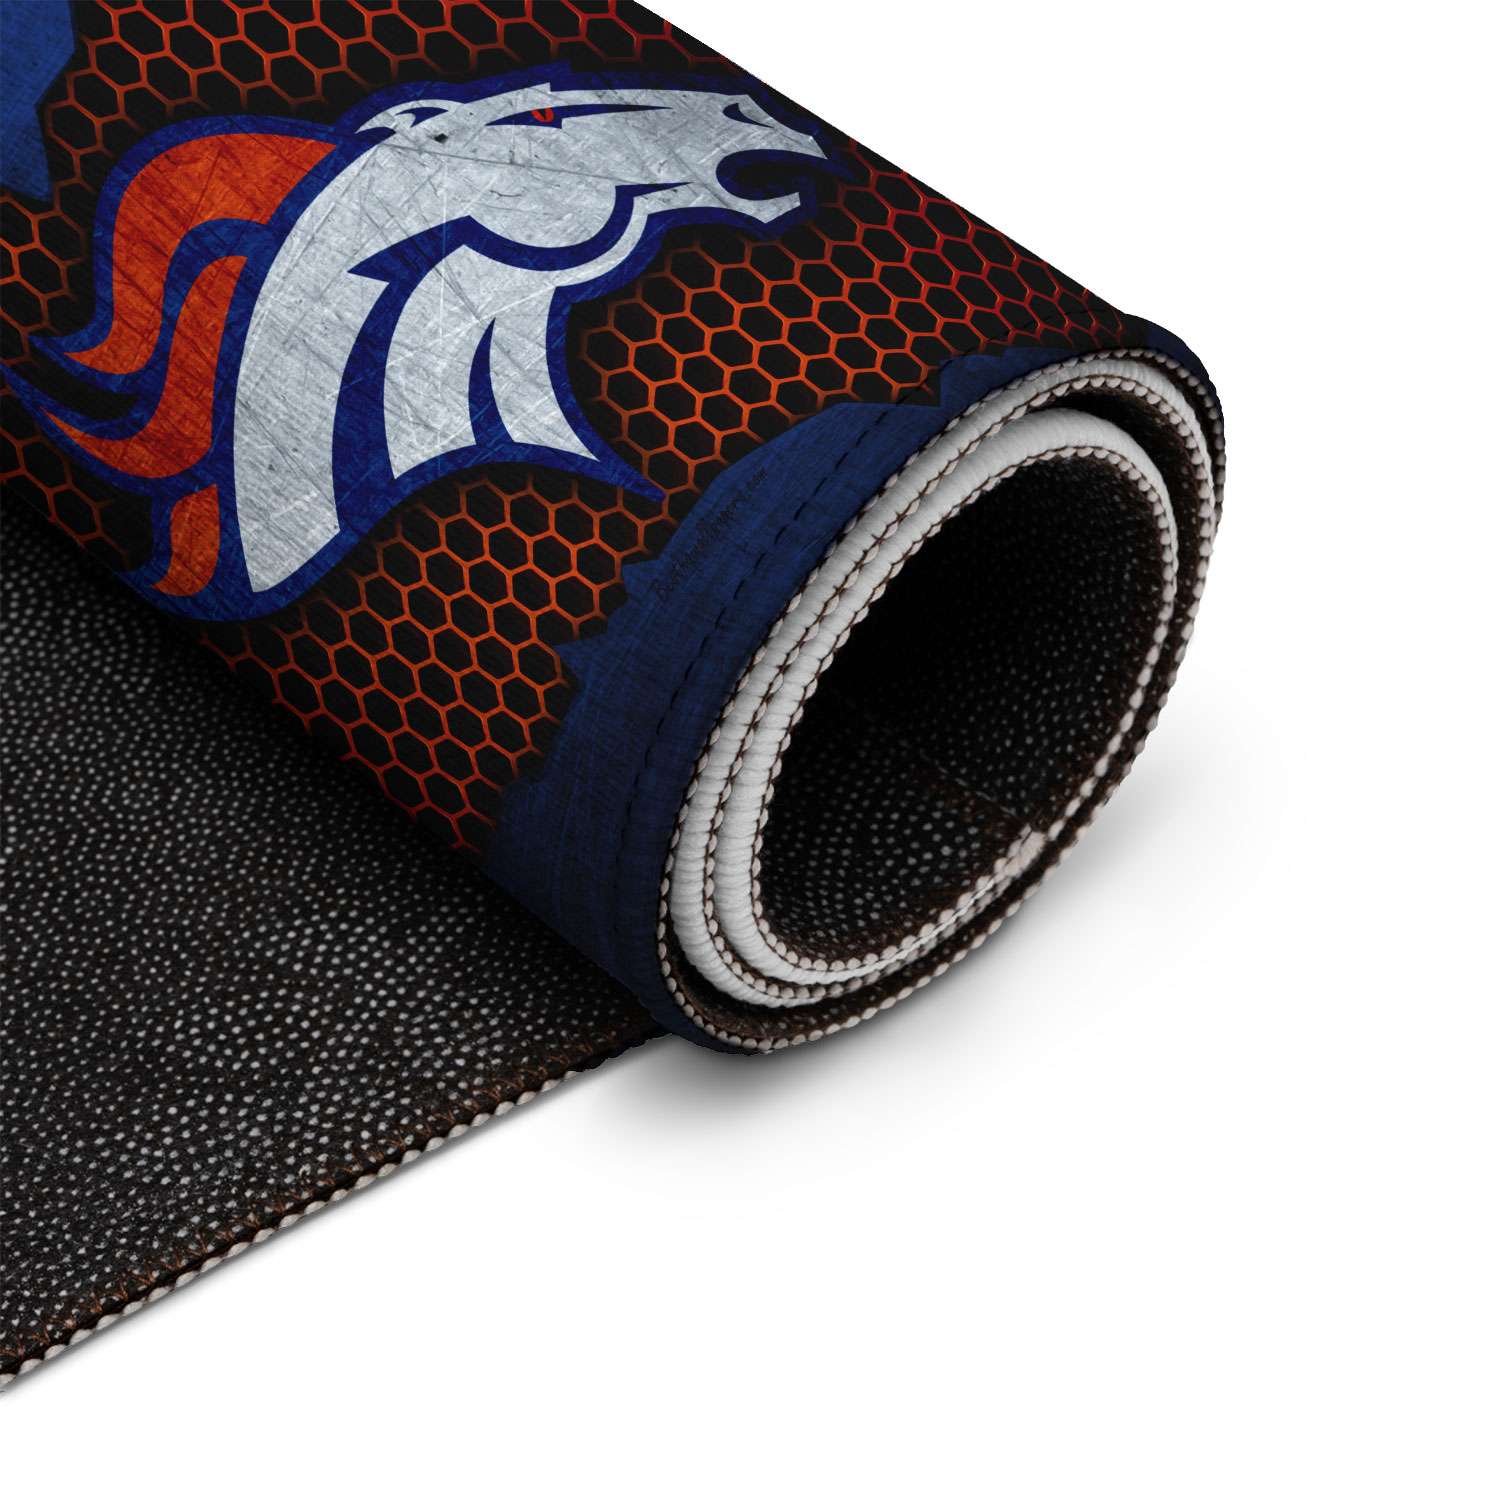 Denver Broncos Dornier Rug Doormat